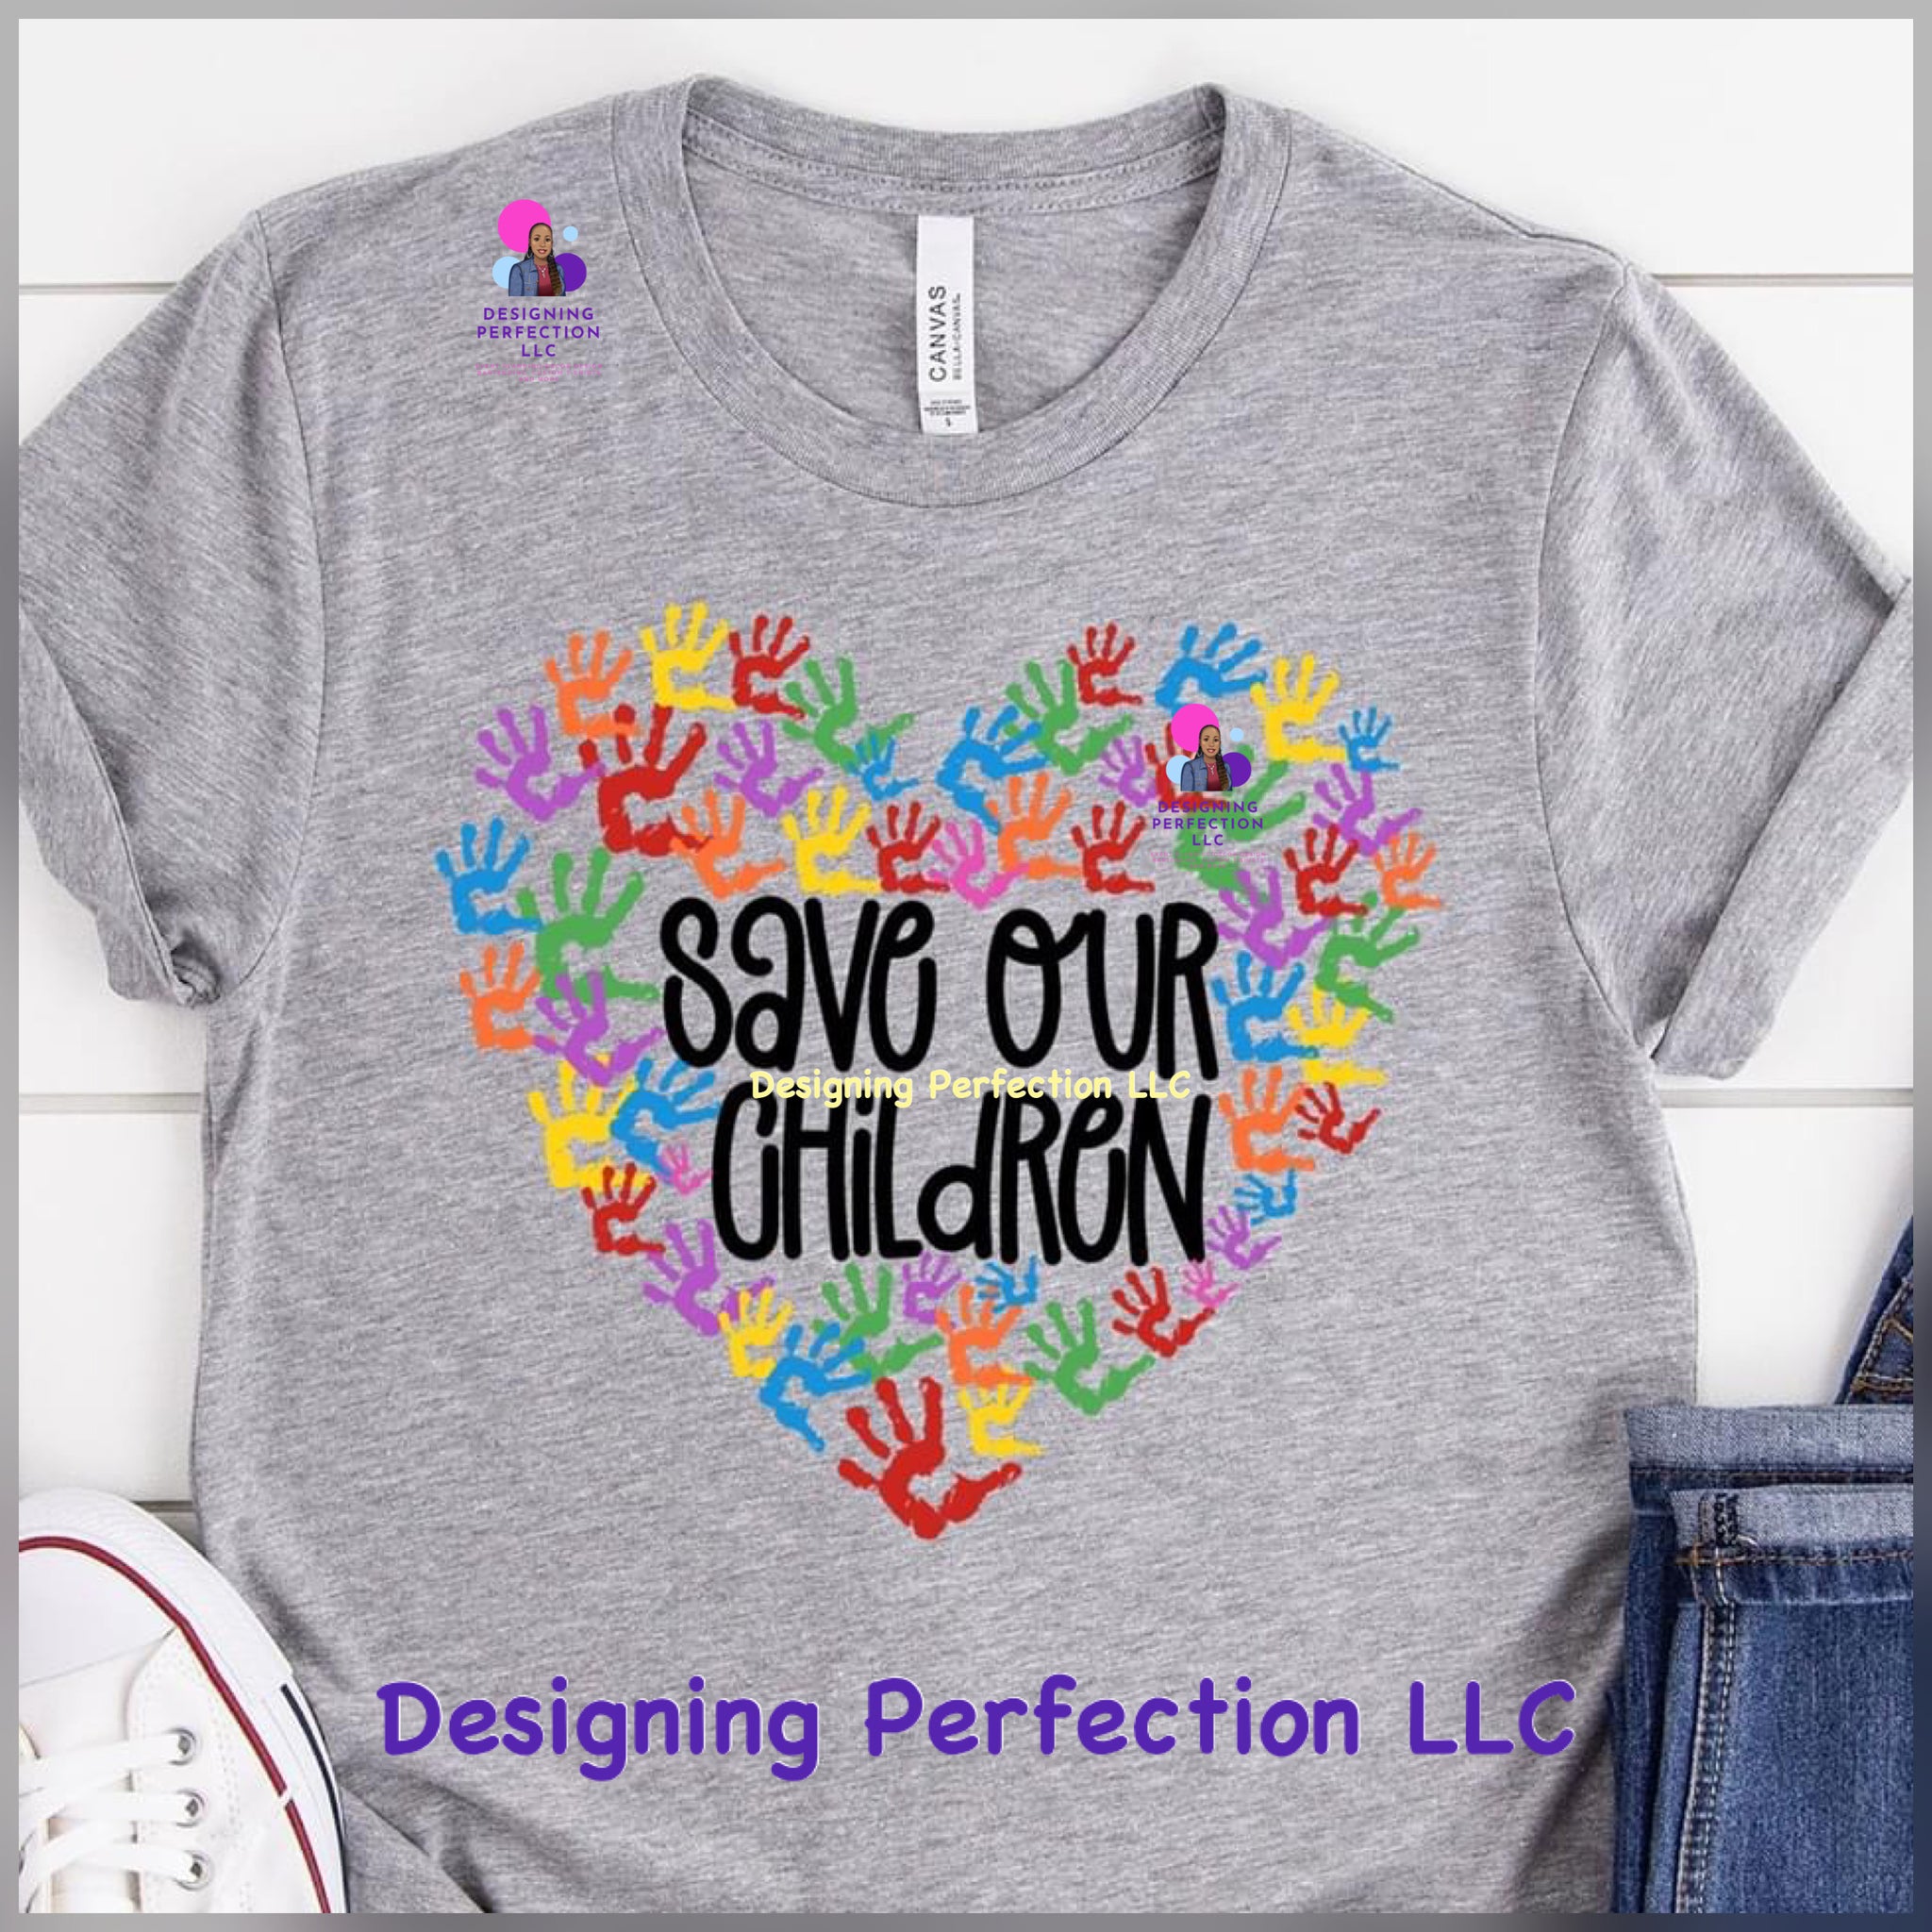 Save our Children... (10) handprints